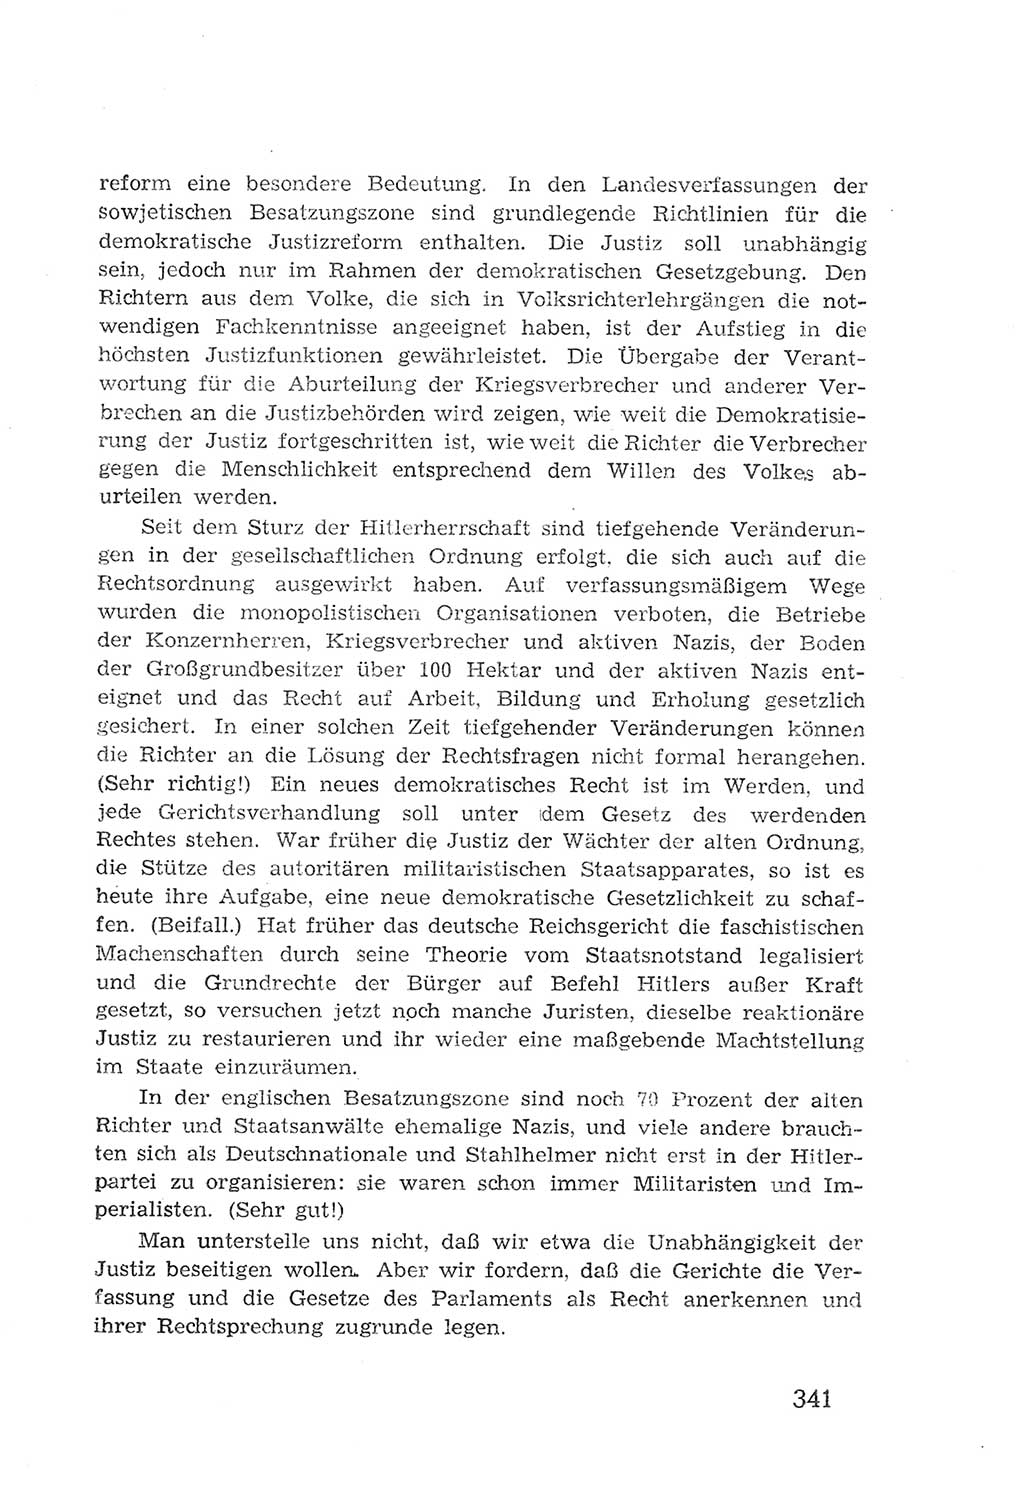 Protokoll der Verhandlungen des 2. Parteitages der Sozialistischen Einheitspartei Deutschlands (SED) [Sowjetische Besatzungszone (SBZ) Deutschlands] 1947, Seite 341 (Prot. Verh. 2. PT SED SBZ Dtl. 1947, S. 341)